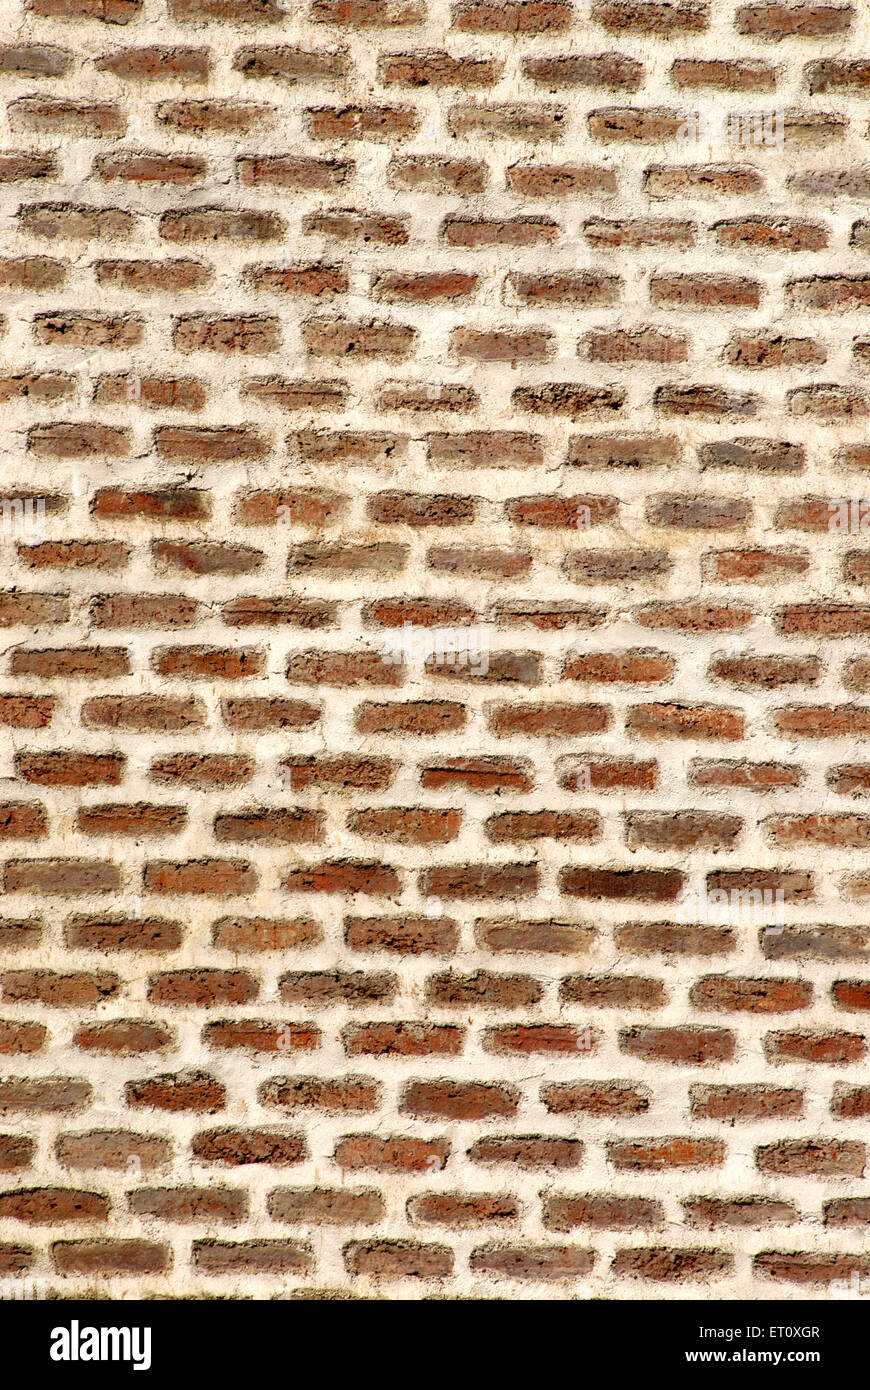 Brickwork wall, Vishrambaug Wada, Peshwa palace, Pune, Maharashtra, India Stock Photo